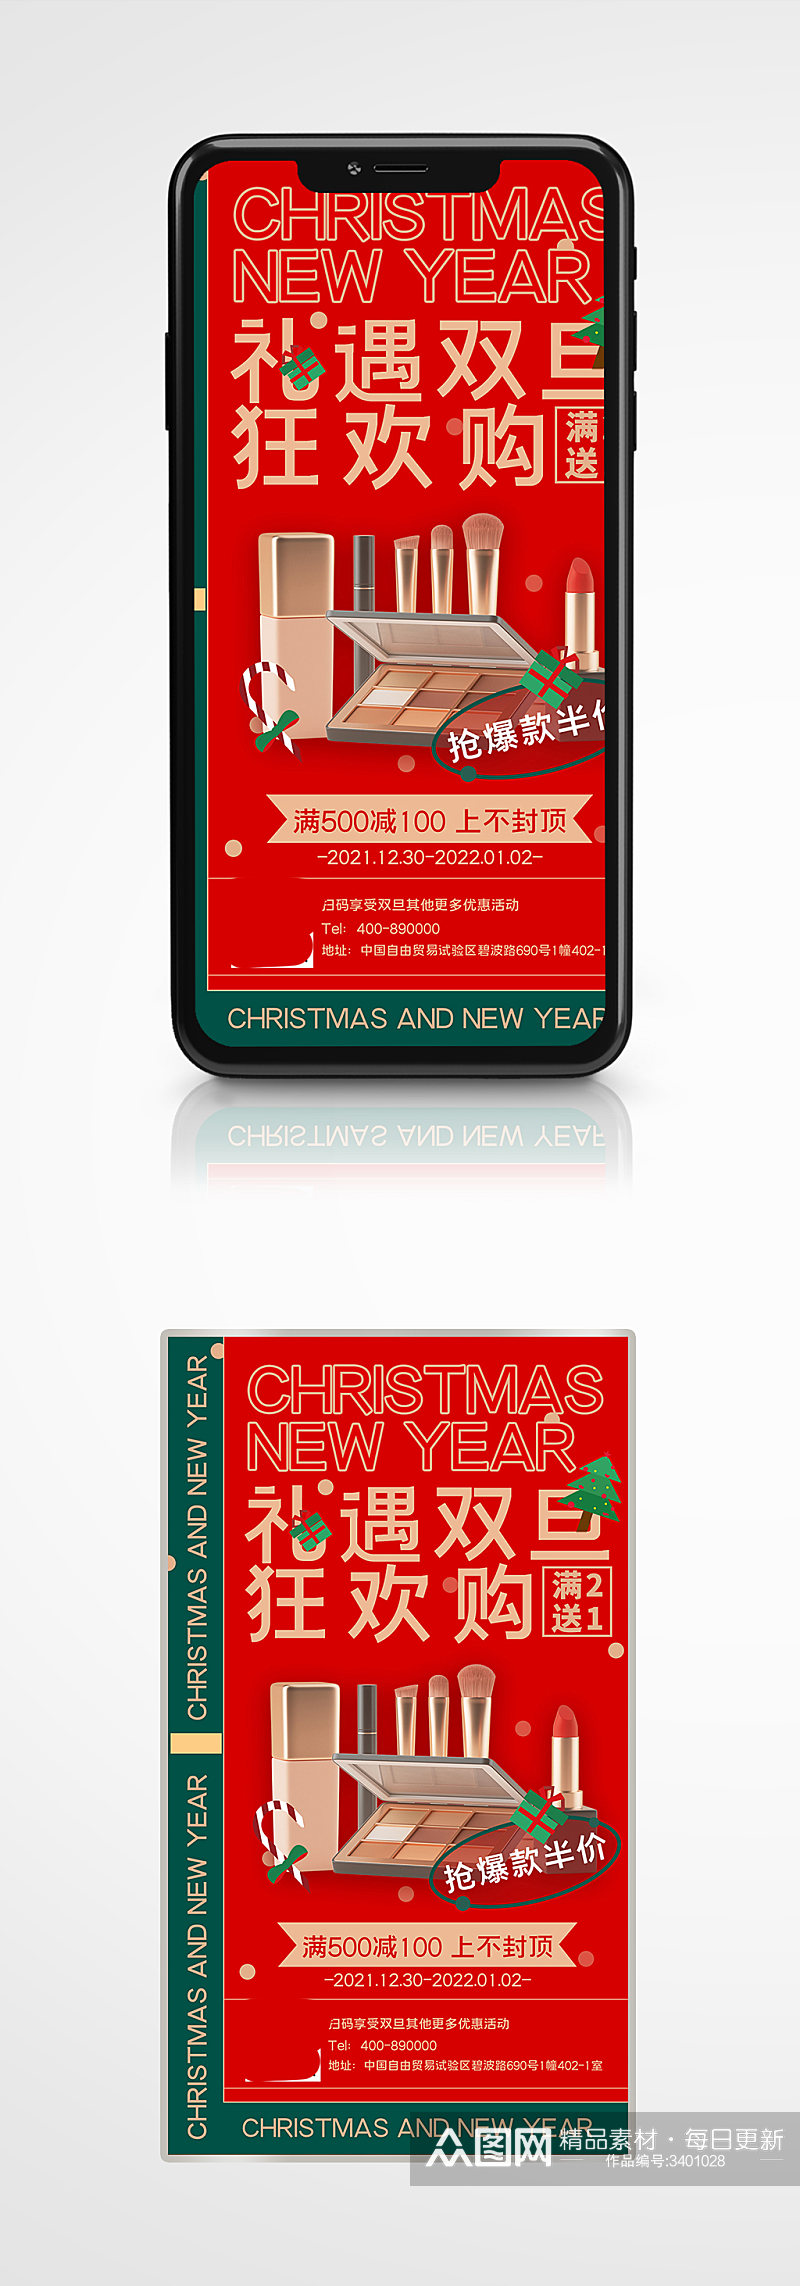 营销双旦促销宣传手机海报红色圣诞节大促素材